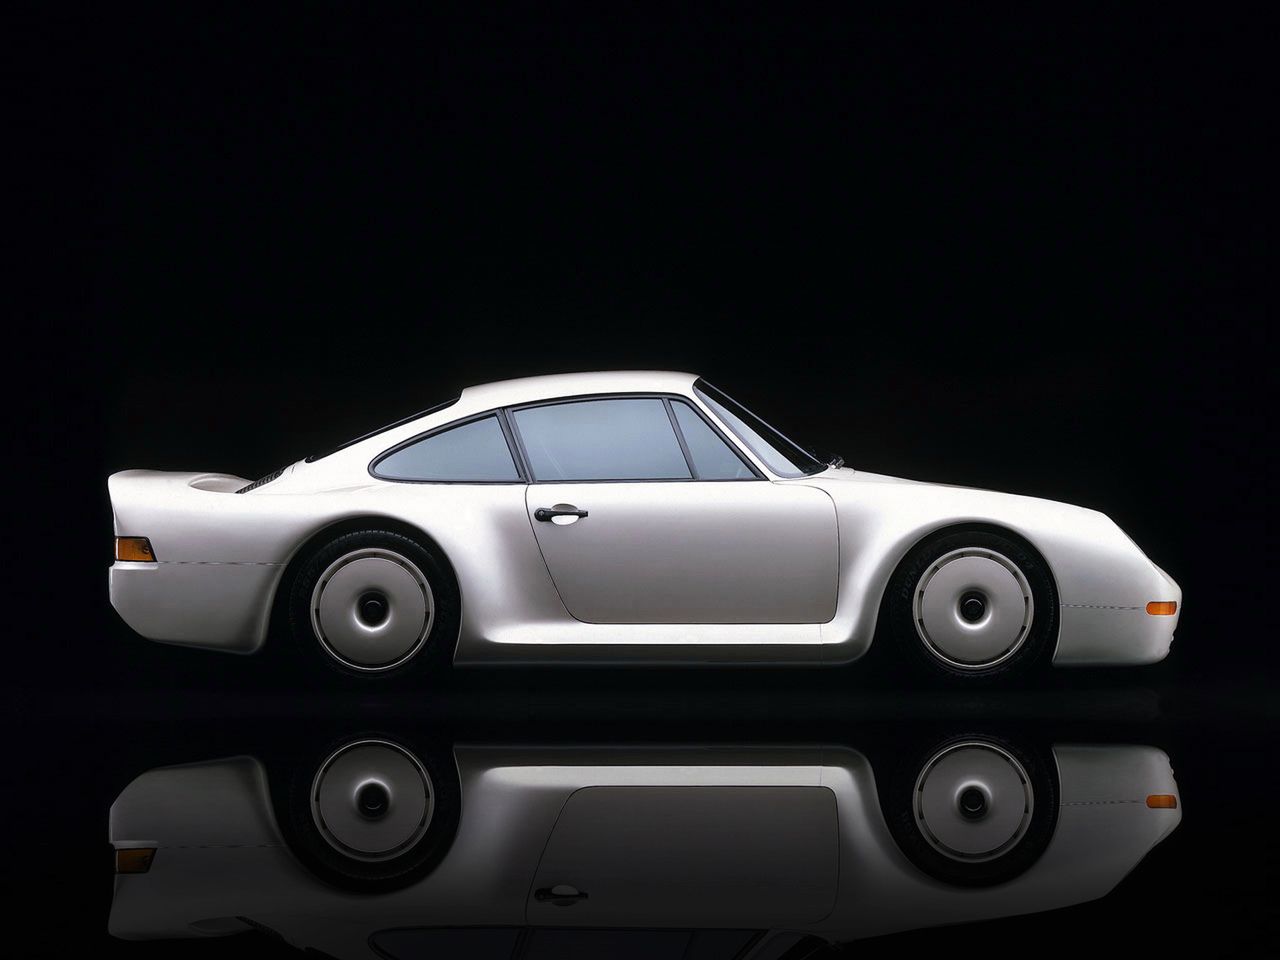 Pomysłodawcą projektu był Helmuth Bott, który przyszedł z propozycją budowy supersamochodu do nowego dyrektora zarządzającego Porsche - Petera Schutza.